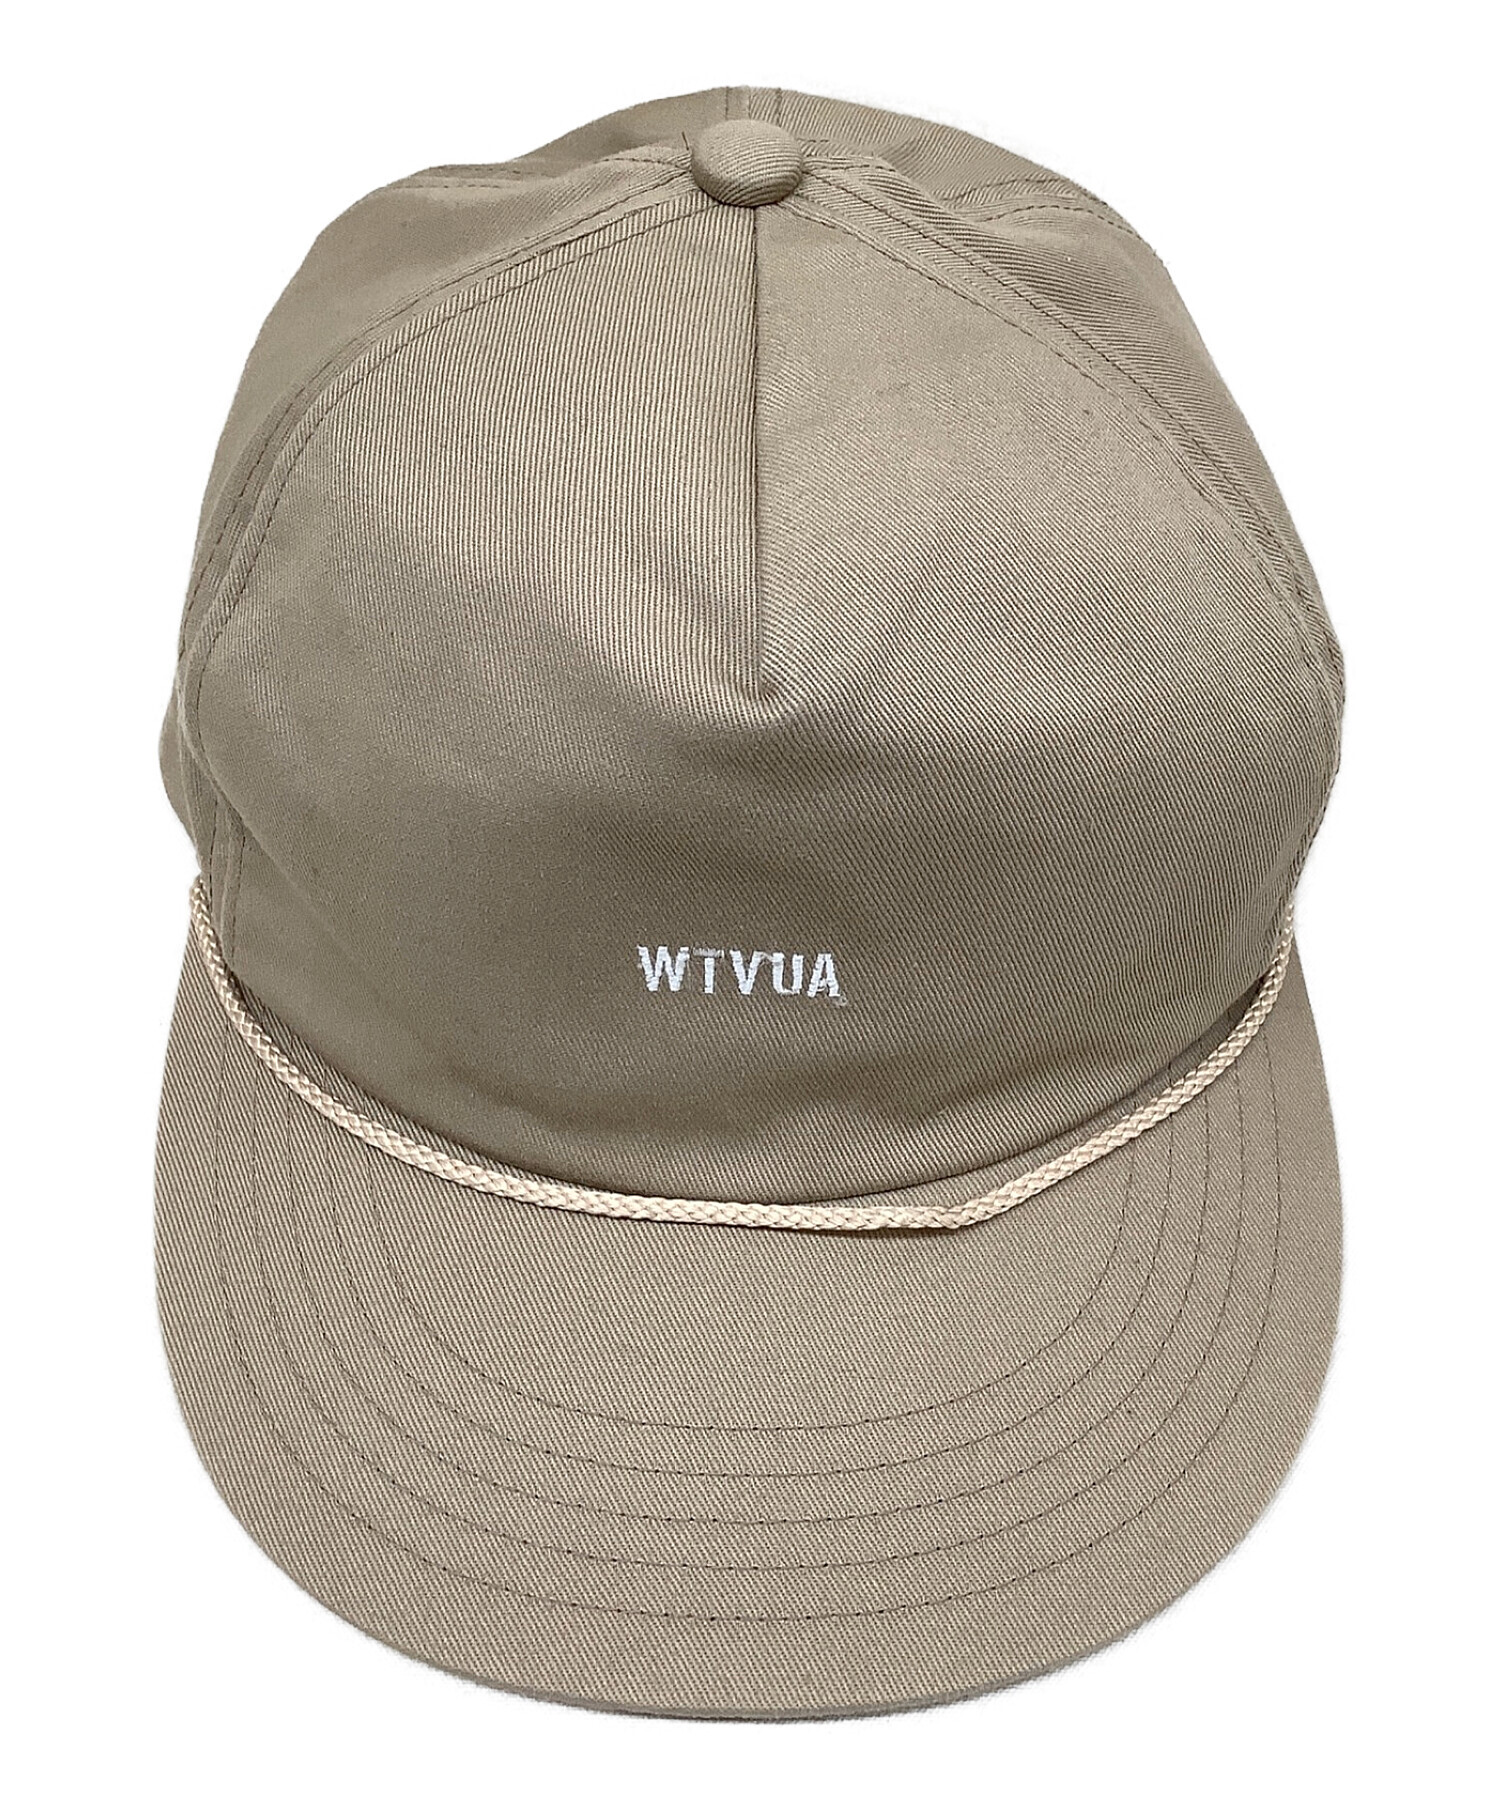 専用 Wtaps ダブルタップス 16s/s MILITIA 02帽子